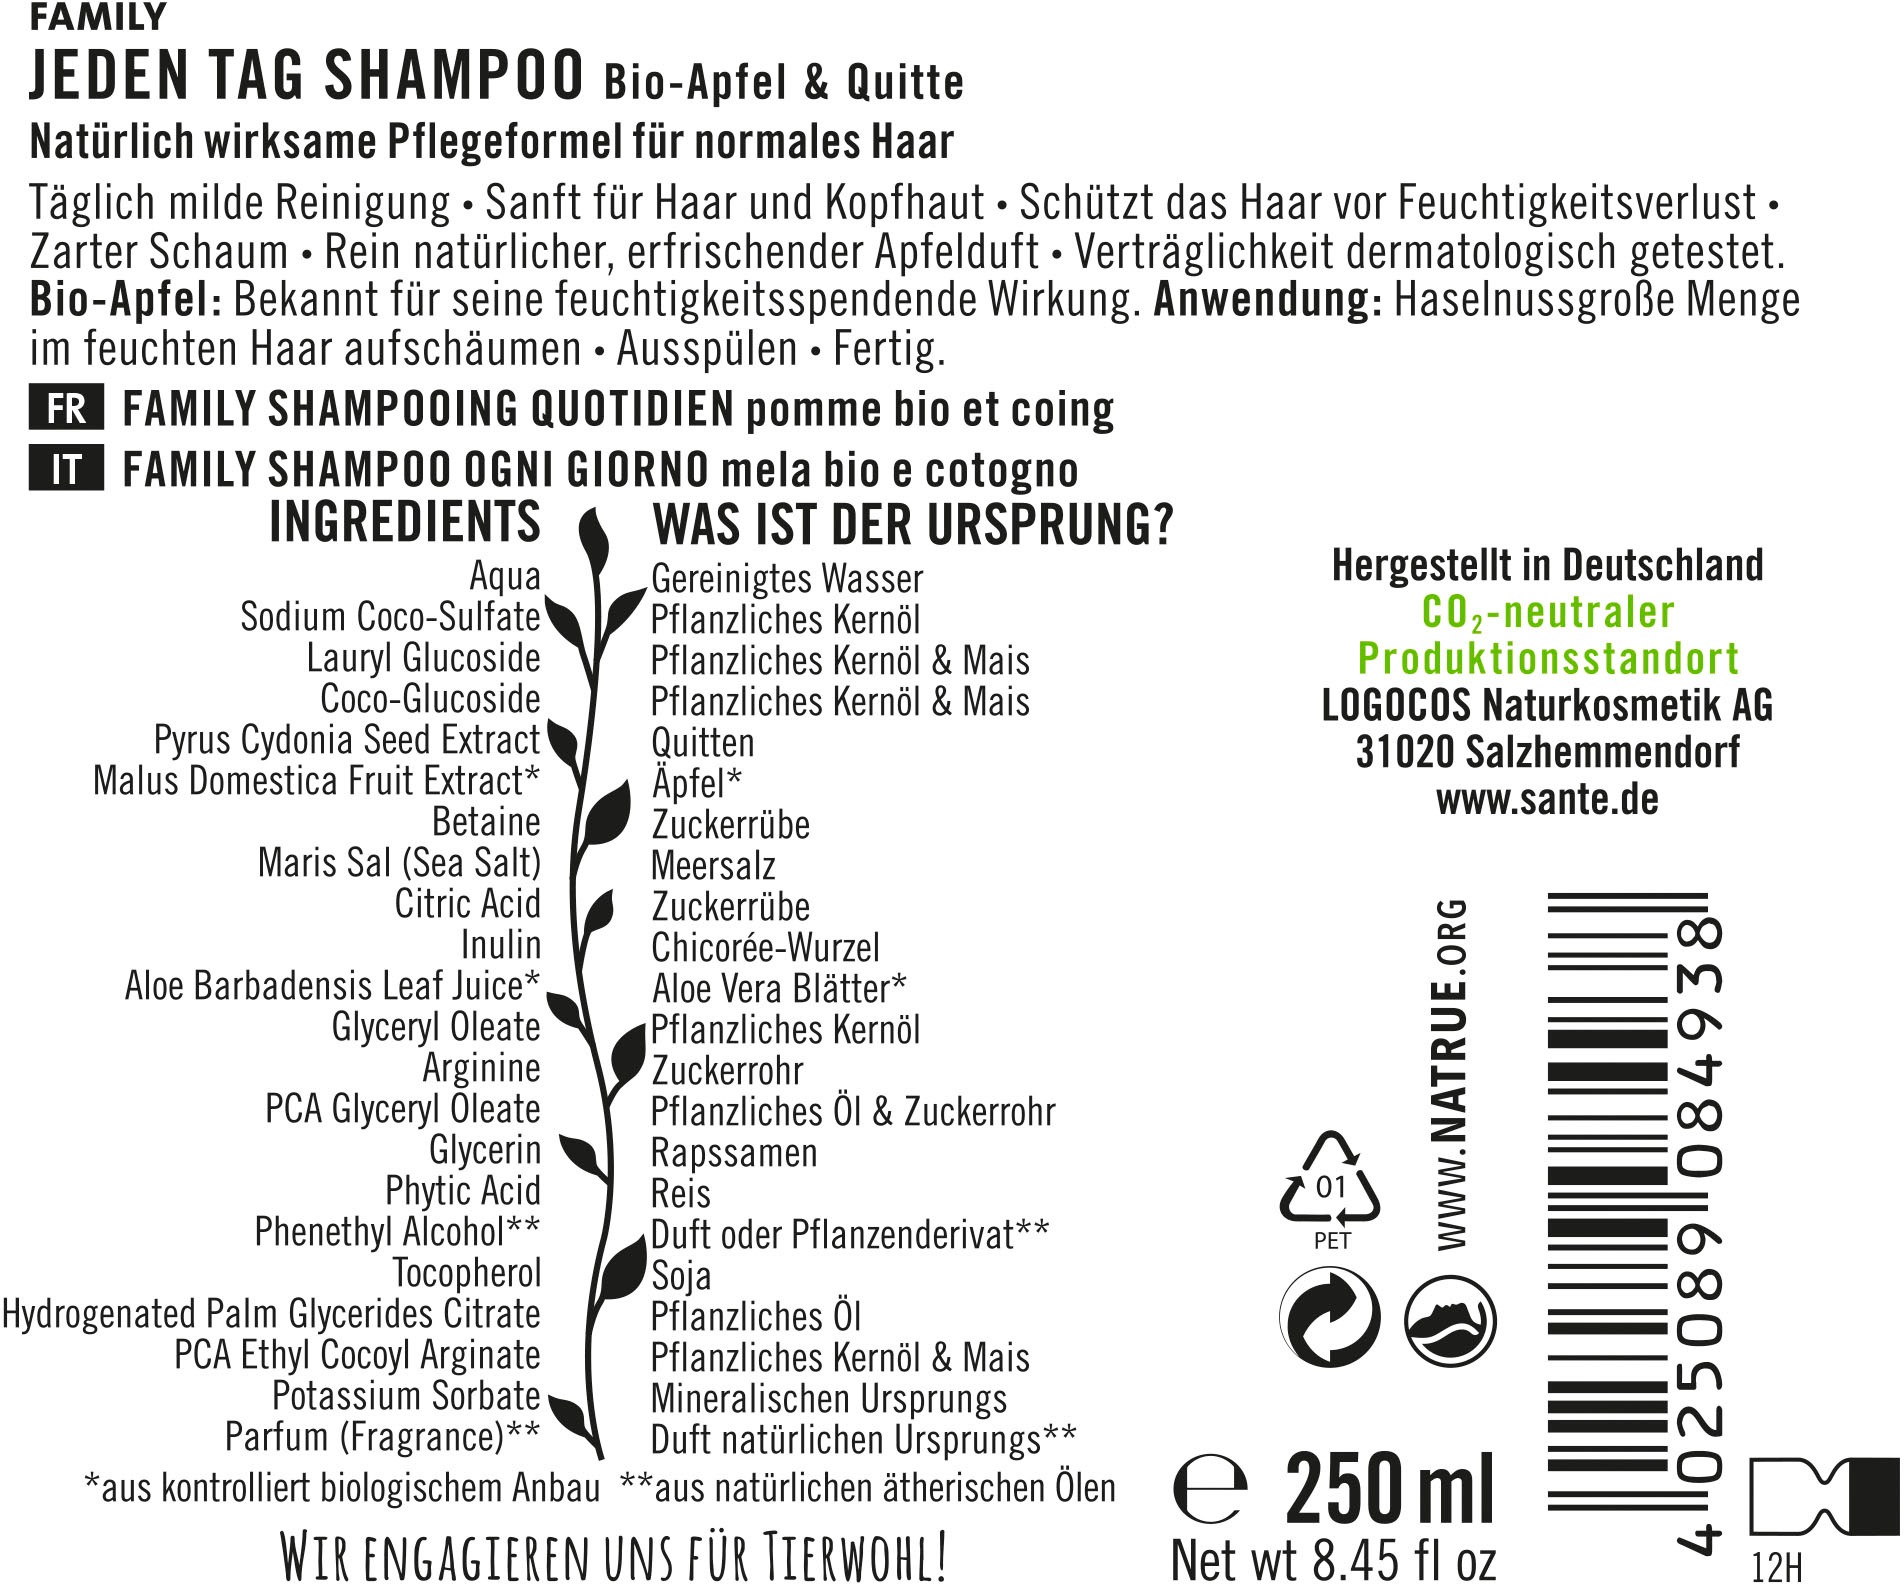 Jeden bestellen »FAMILY Haarshampoo SANTE OTTO Tag Shampoo« bei